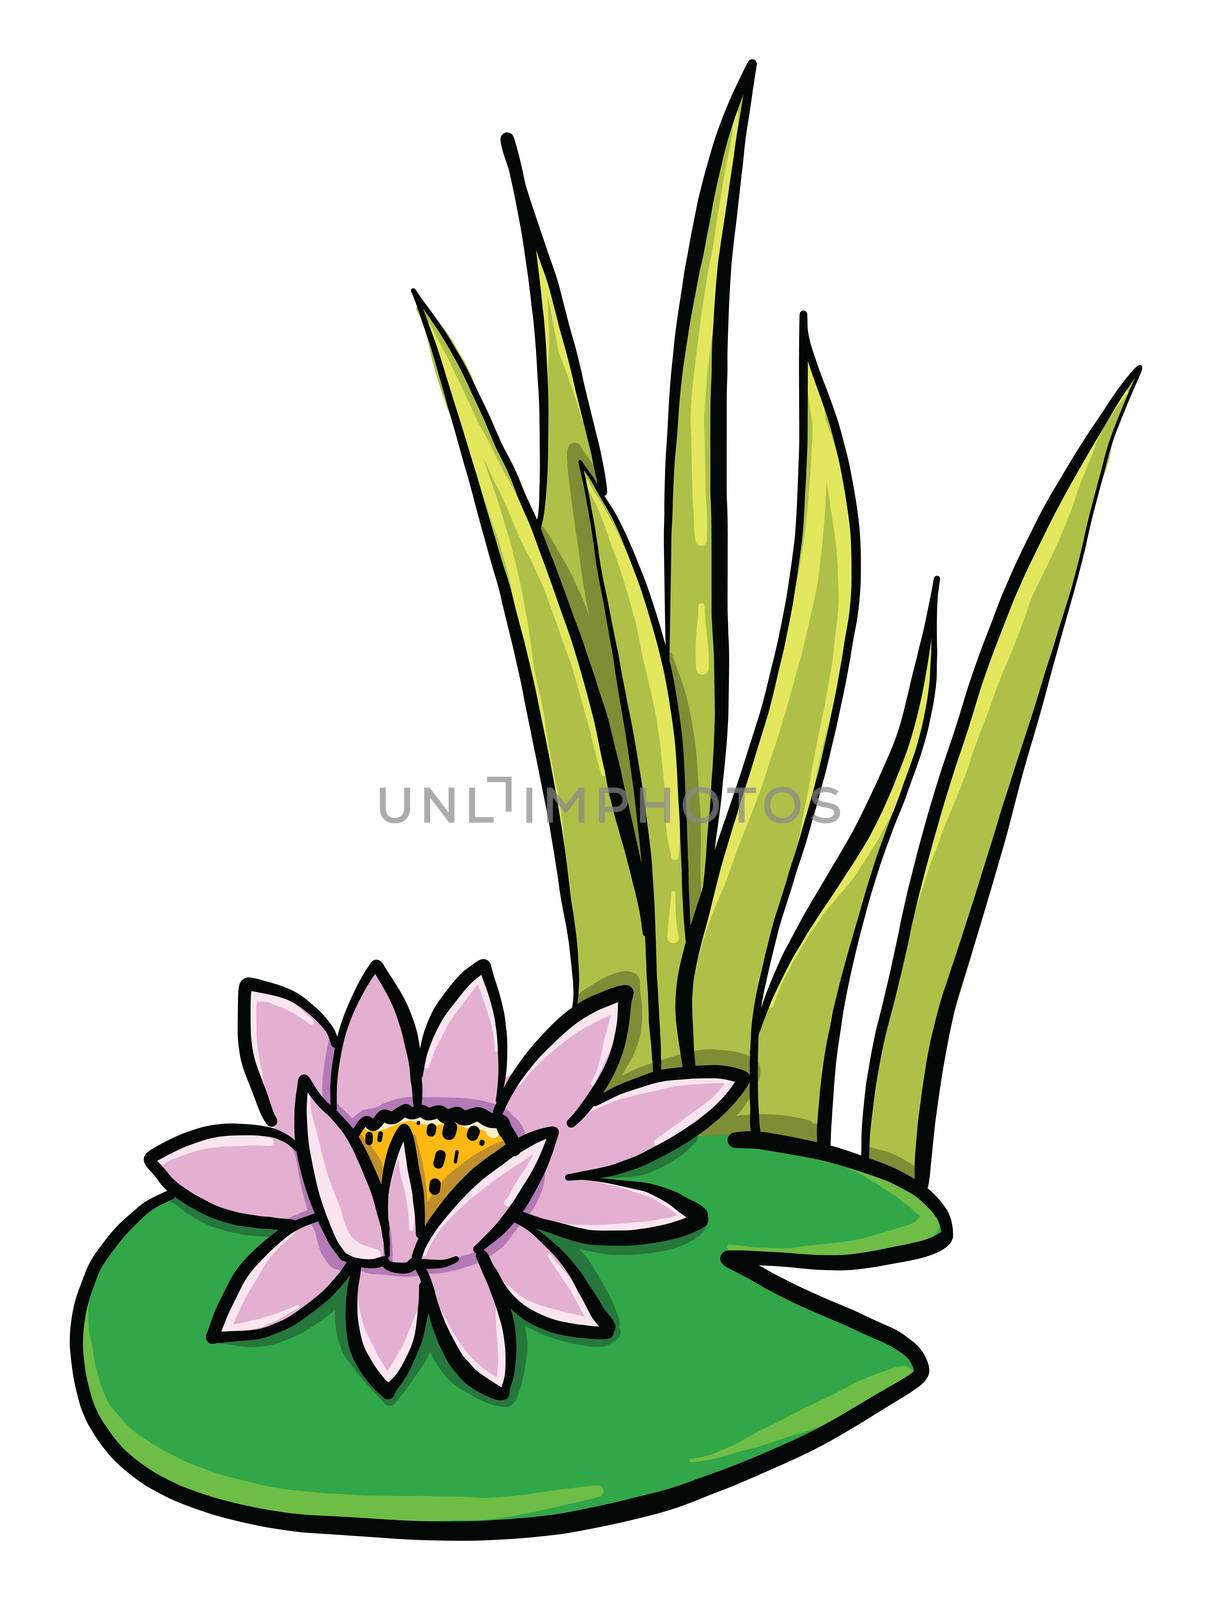 Lotus flower , illustration, vector on white background